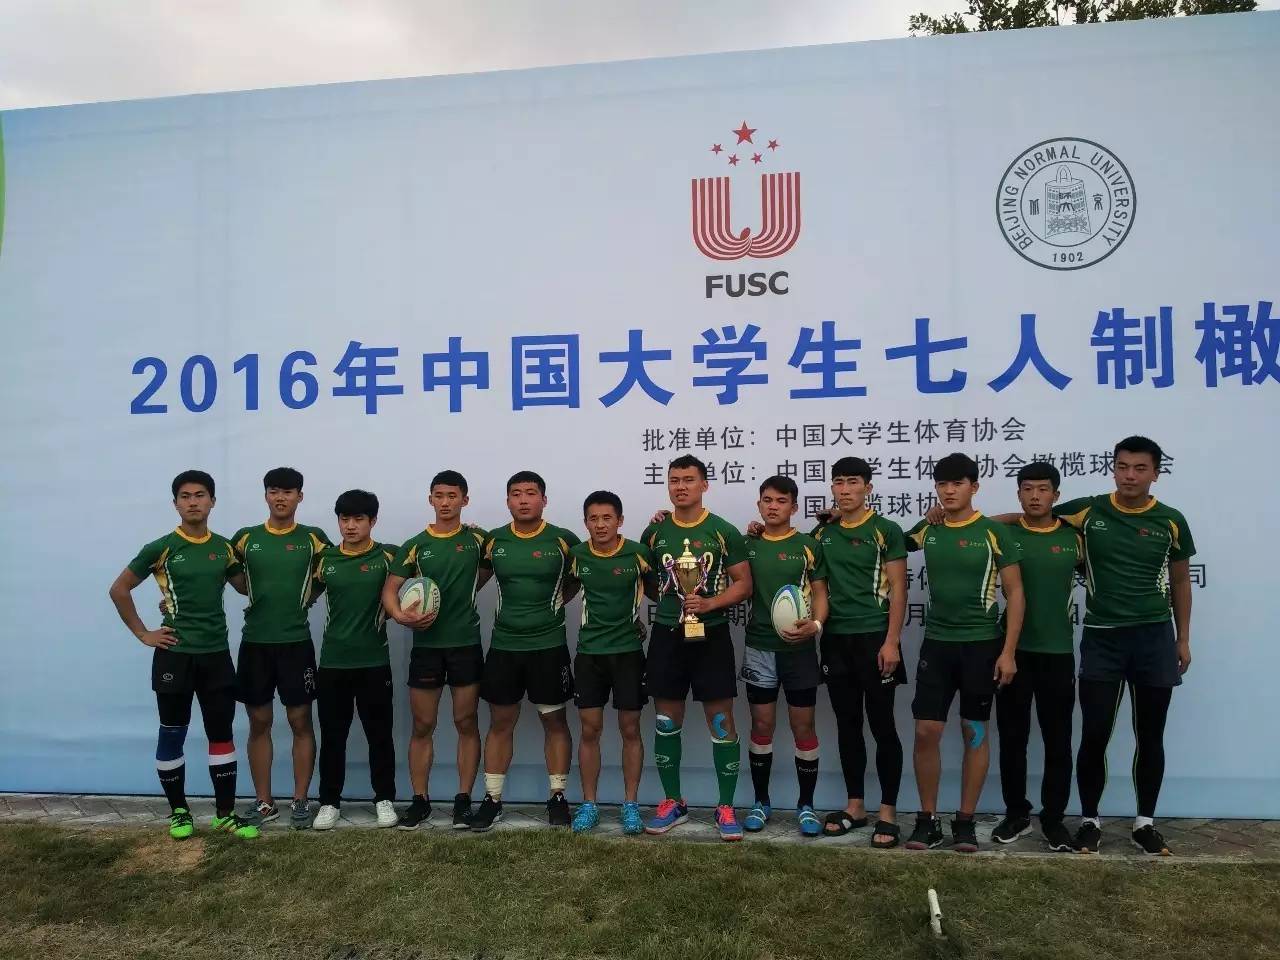 喜报|沈阳农业大学橄榄球队喜获佳绩_搜狐体育_搜狐网